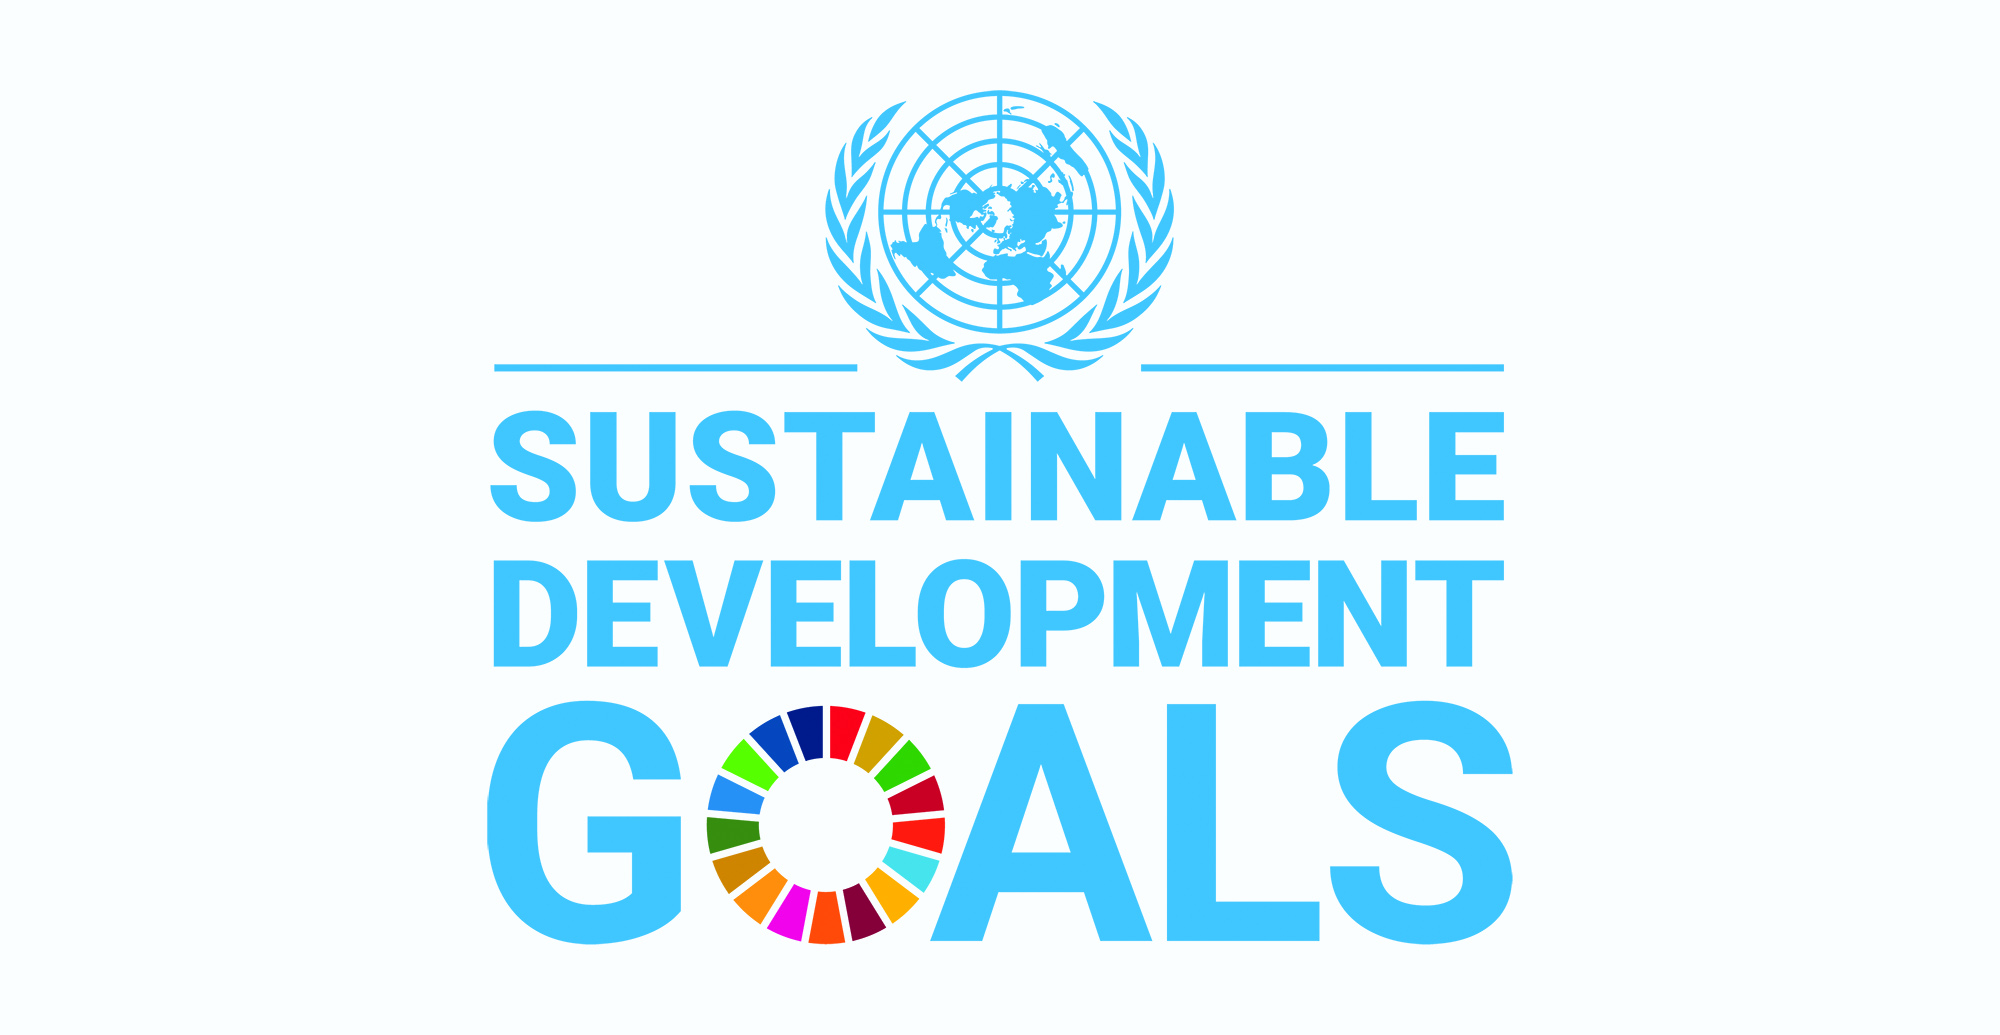 Заседание Рабочей группы по ЦУР и ключевым показателям устойчивого развития: основные результаты и планы